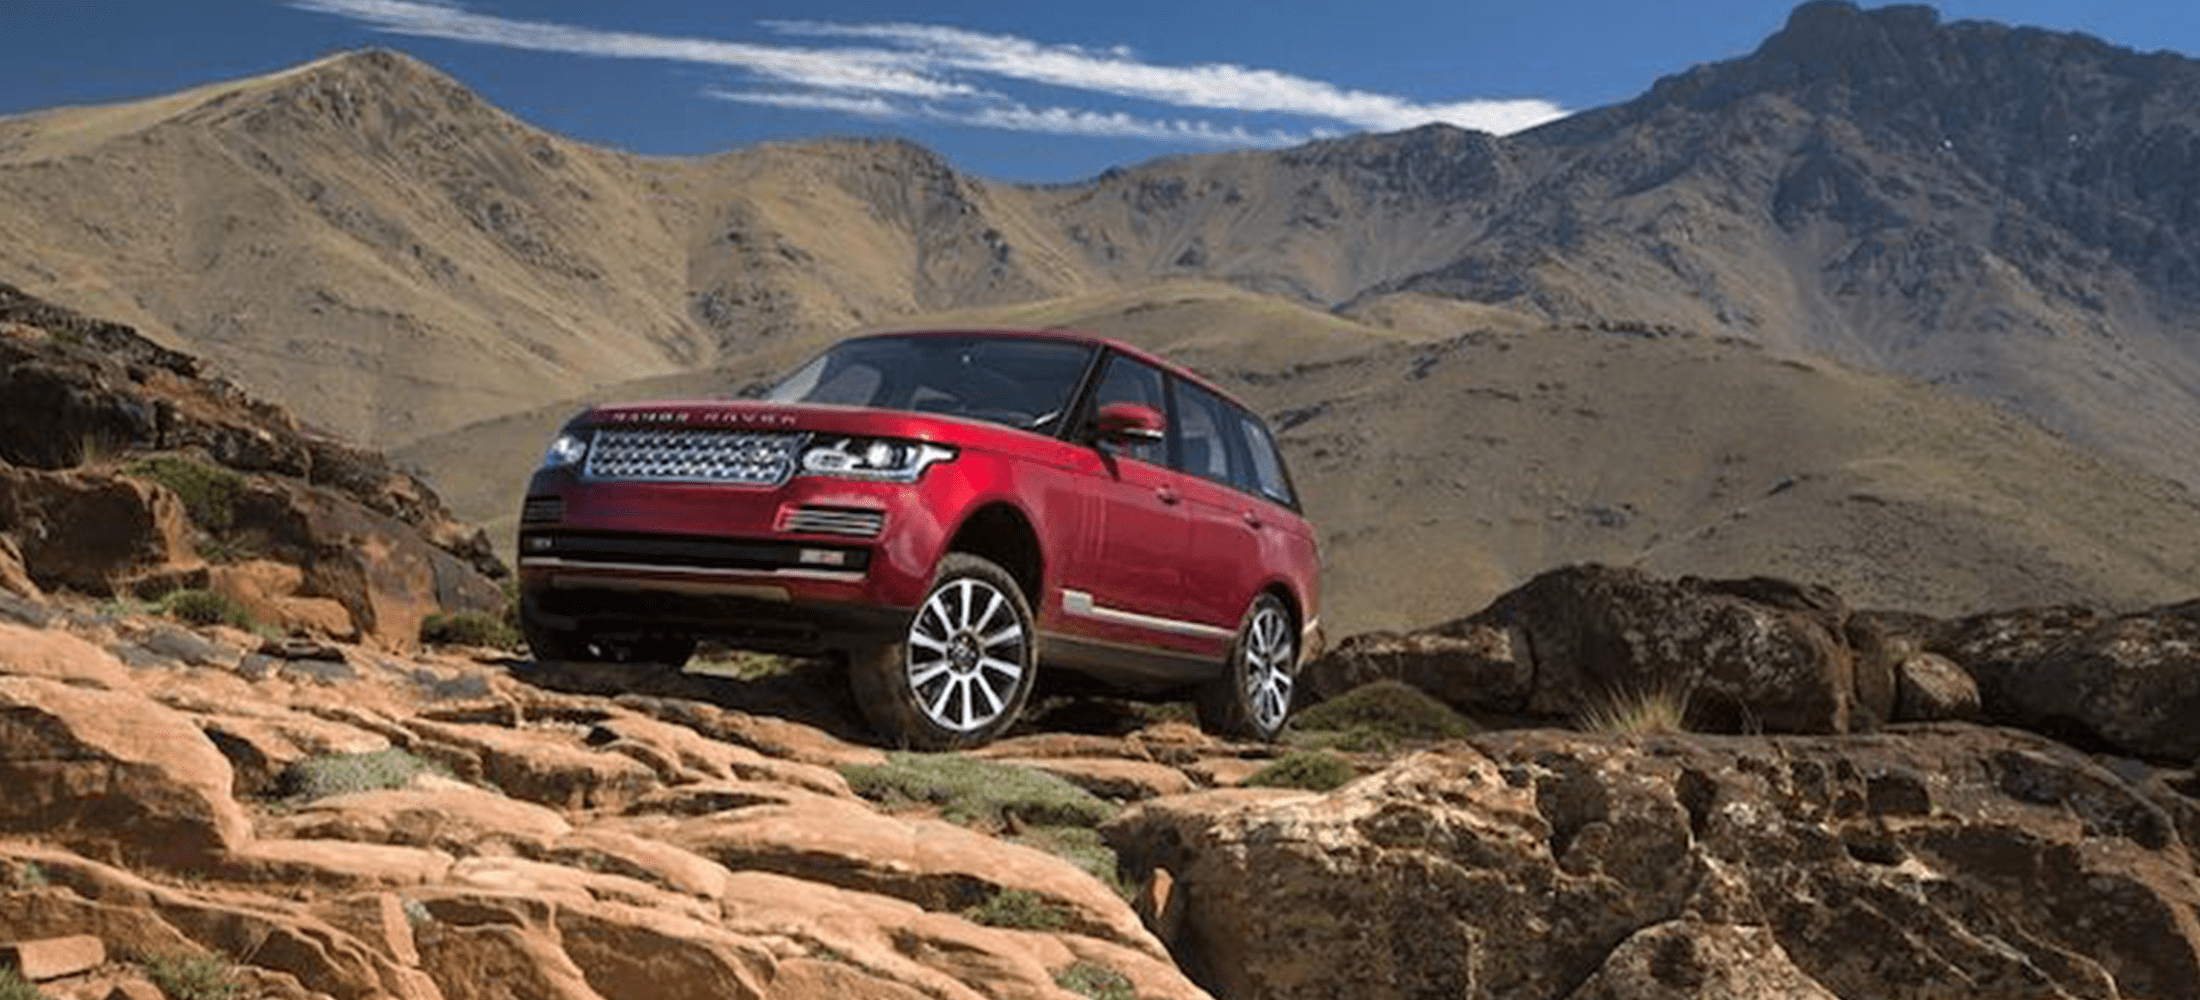 Leasingrückläufer Range Rover Rot